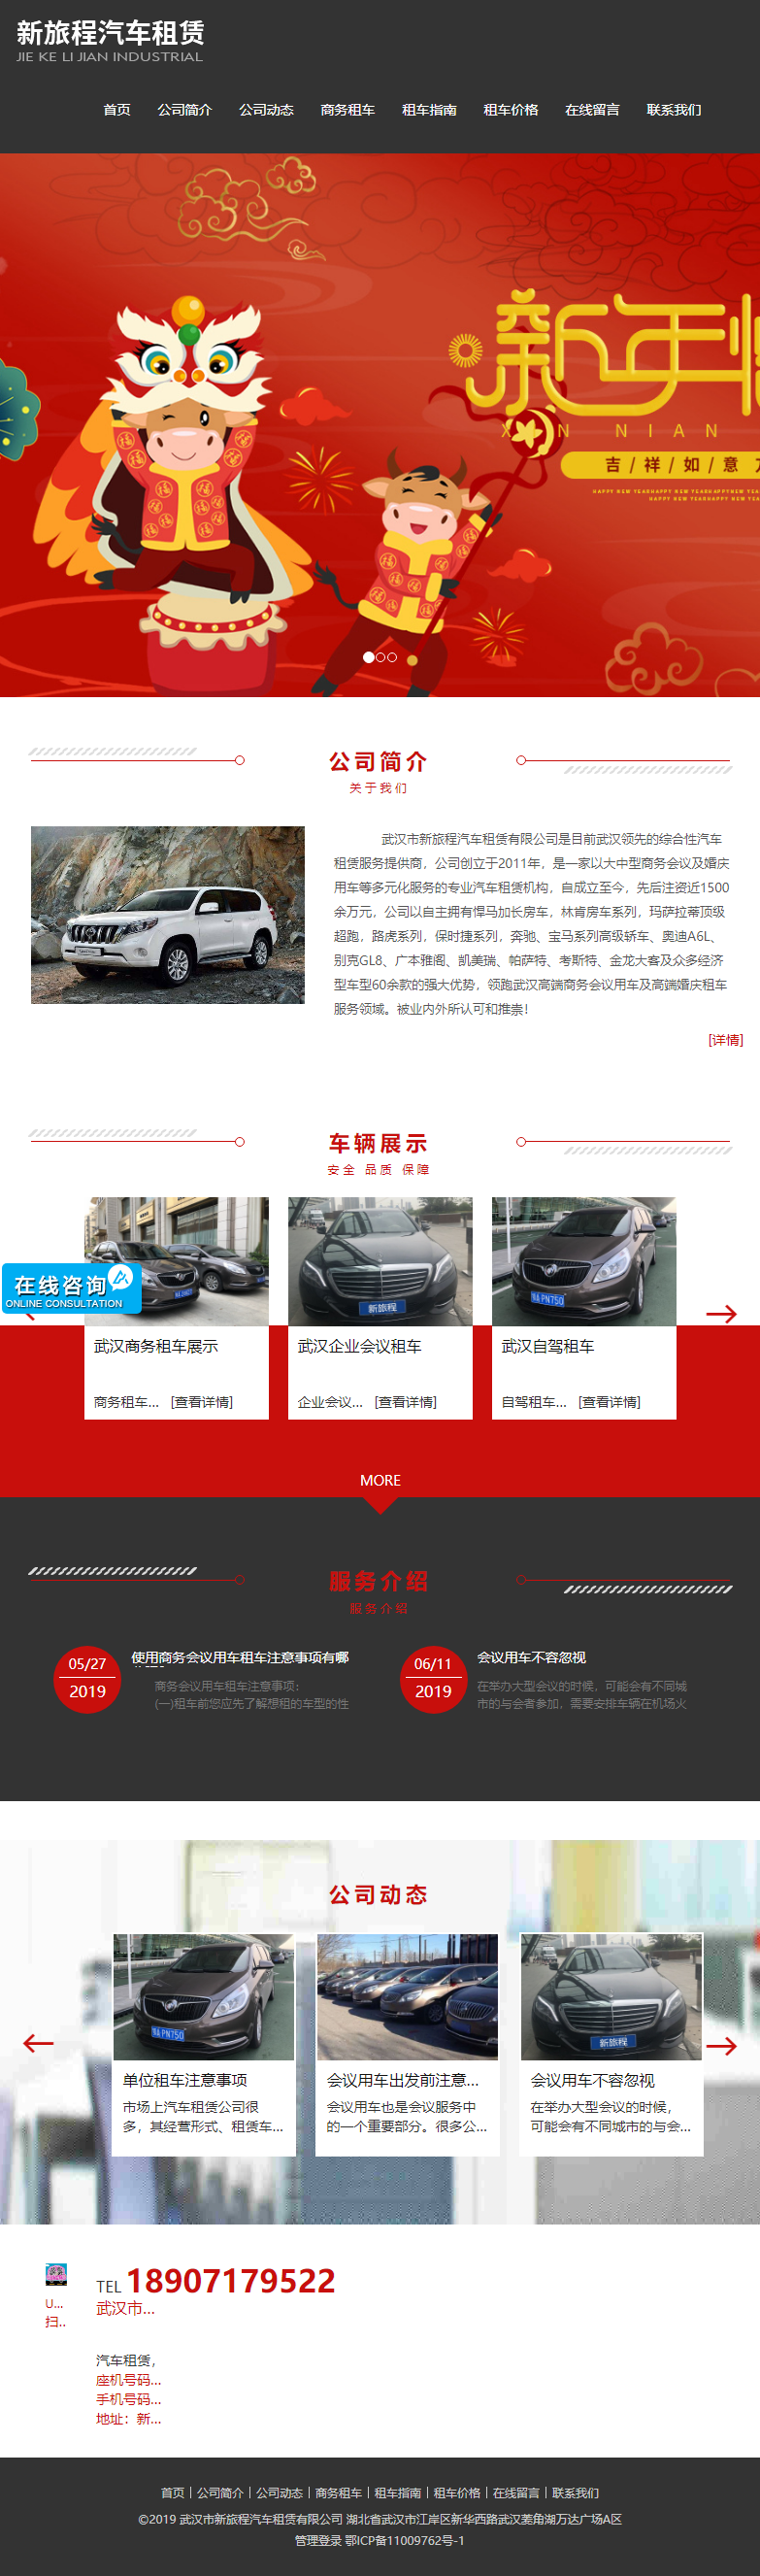 武汉市新旅程汽车租赁有限公司网站案例